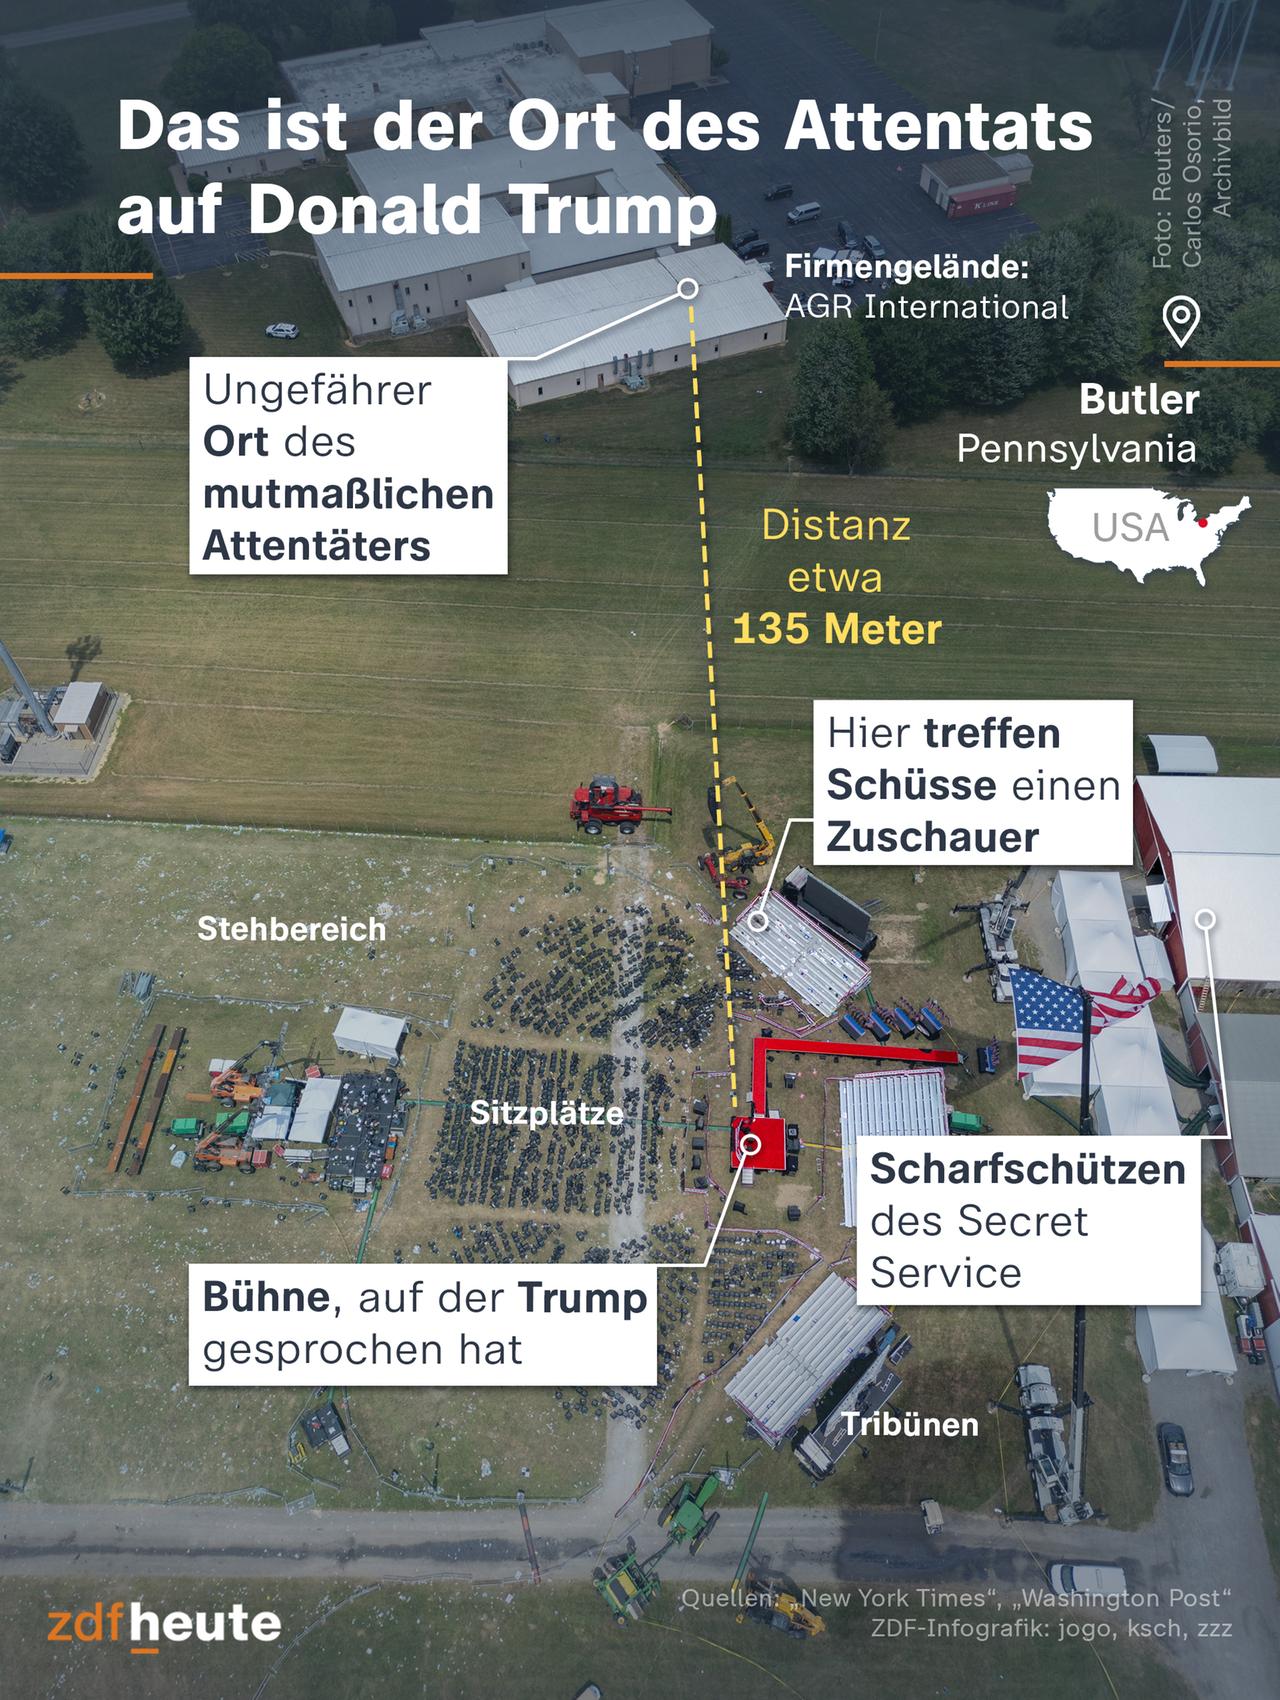 Die Infokarte zeigt den Ort des Attentats auf Donald Trump in Butler, Pennsylvania.